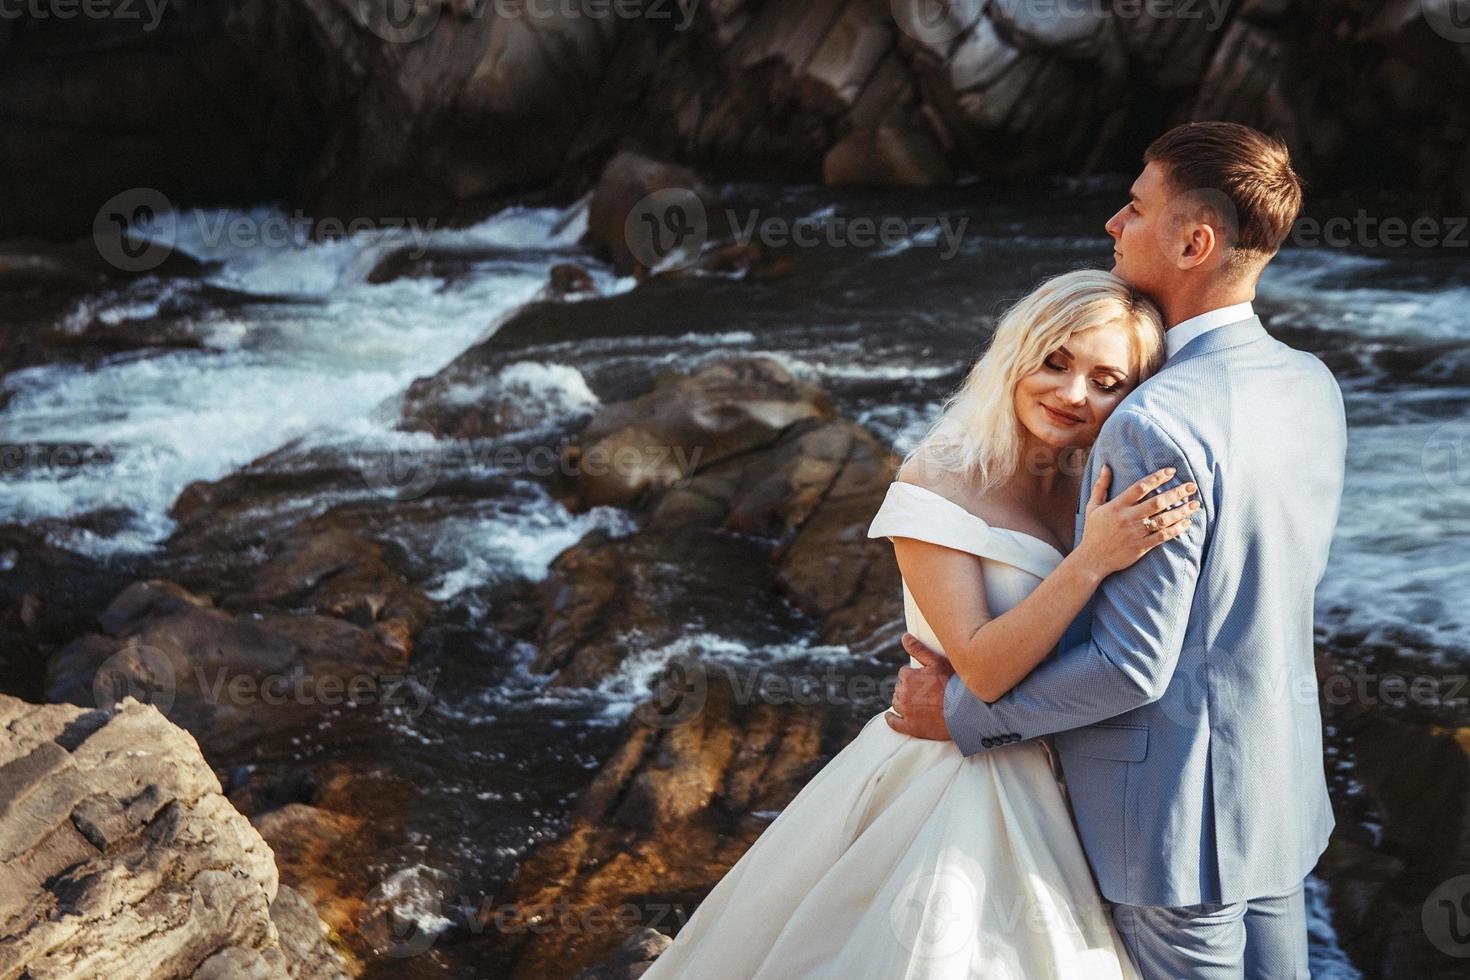 echtpaar omarmen met een berg en rivier achtergrond foto